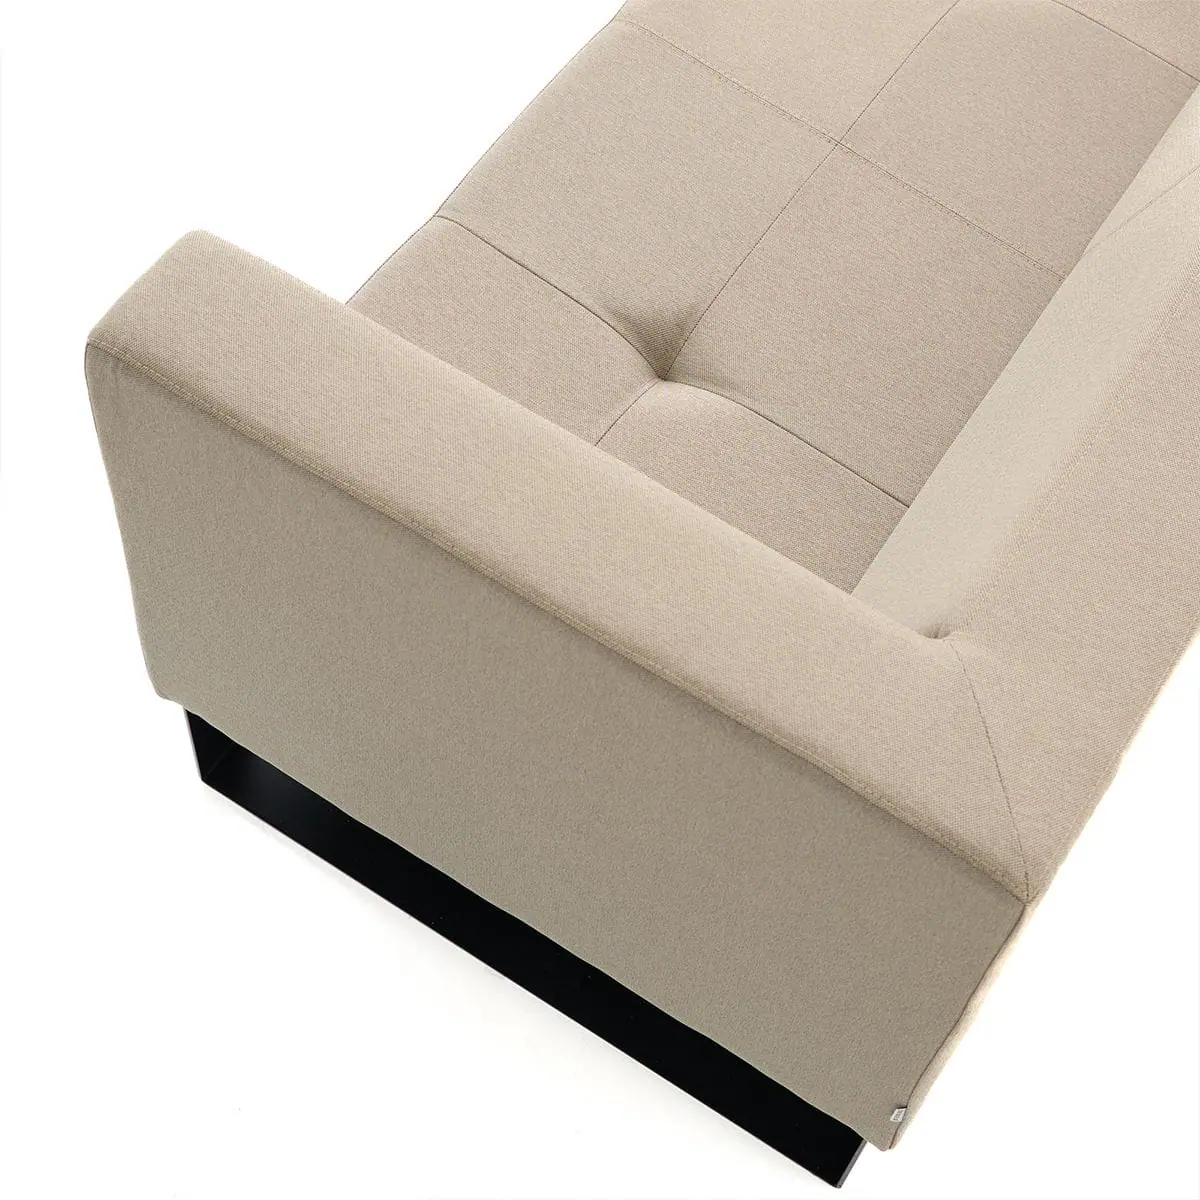 delaoliva-etna-soft-lounge-seating-011